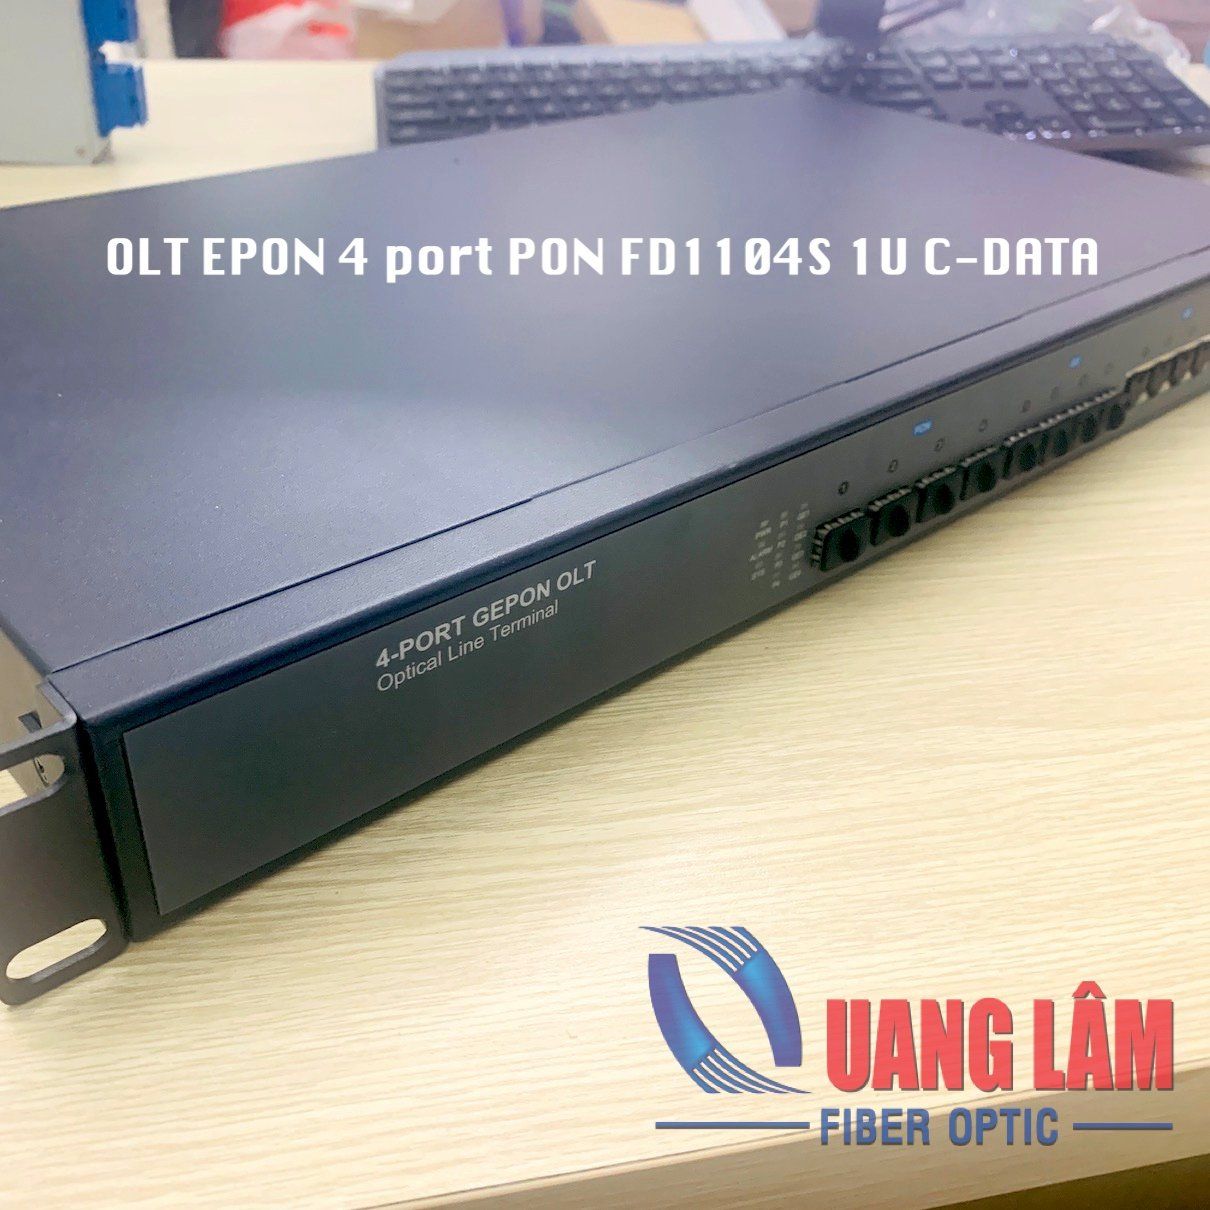 OLT EPON 4 port PON FD1104S 1U C-DATA